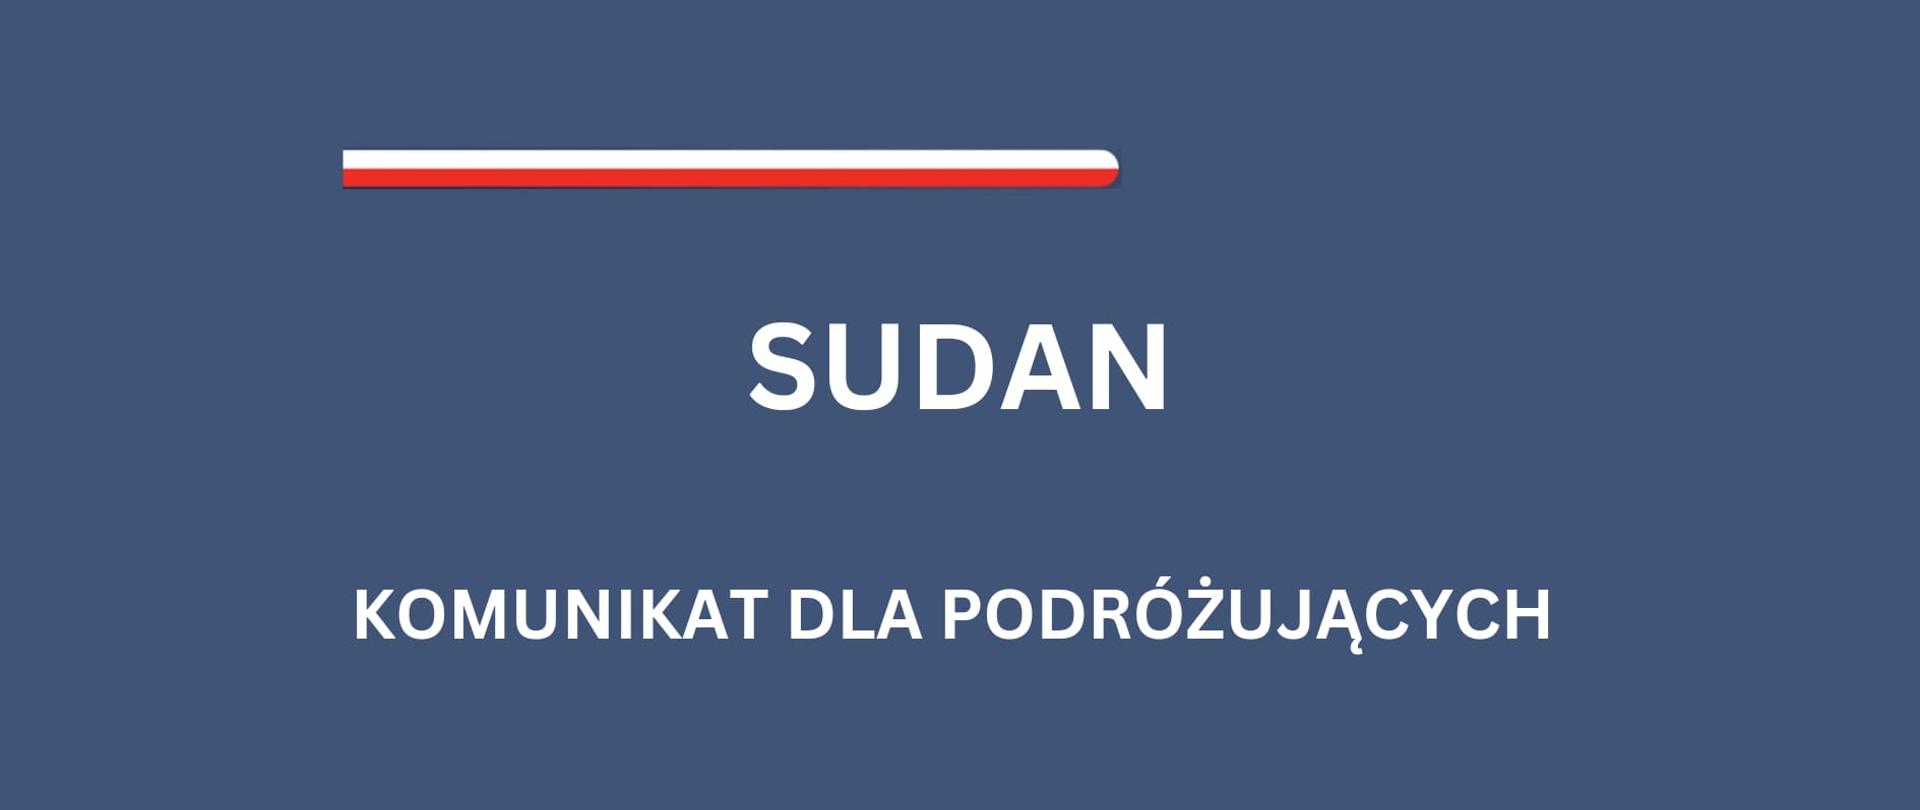 sudan_komunikat